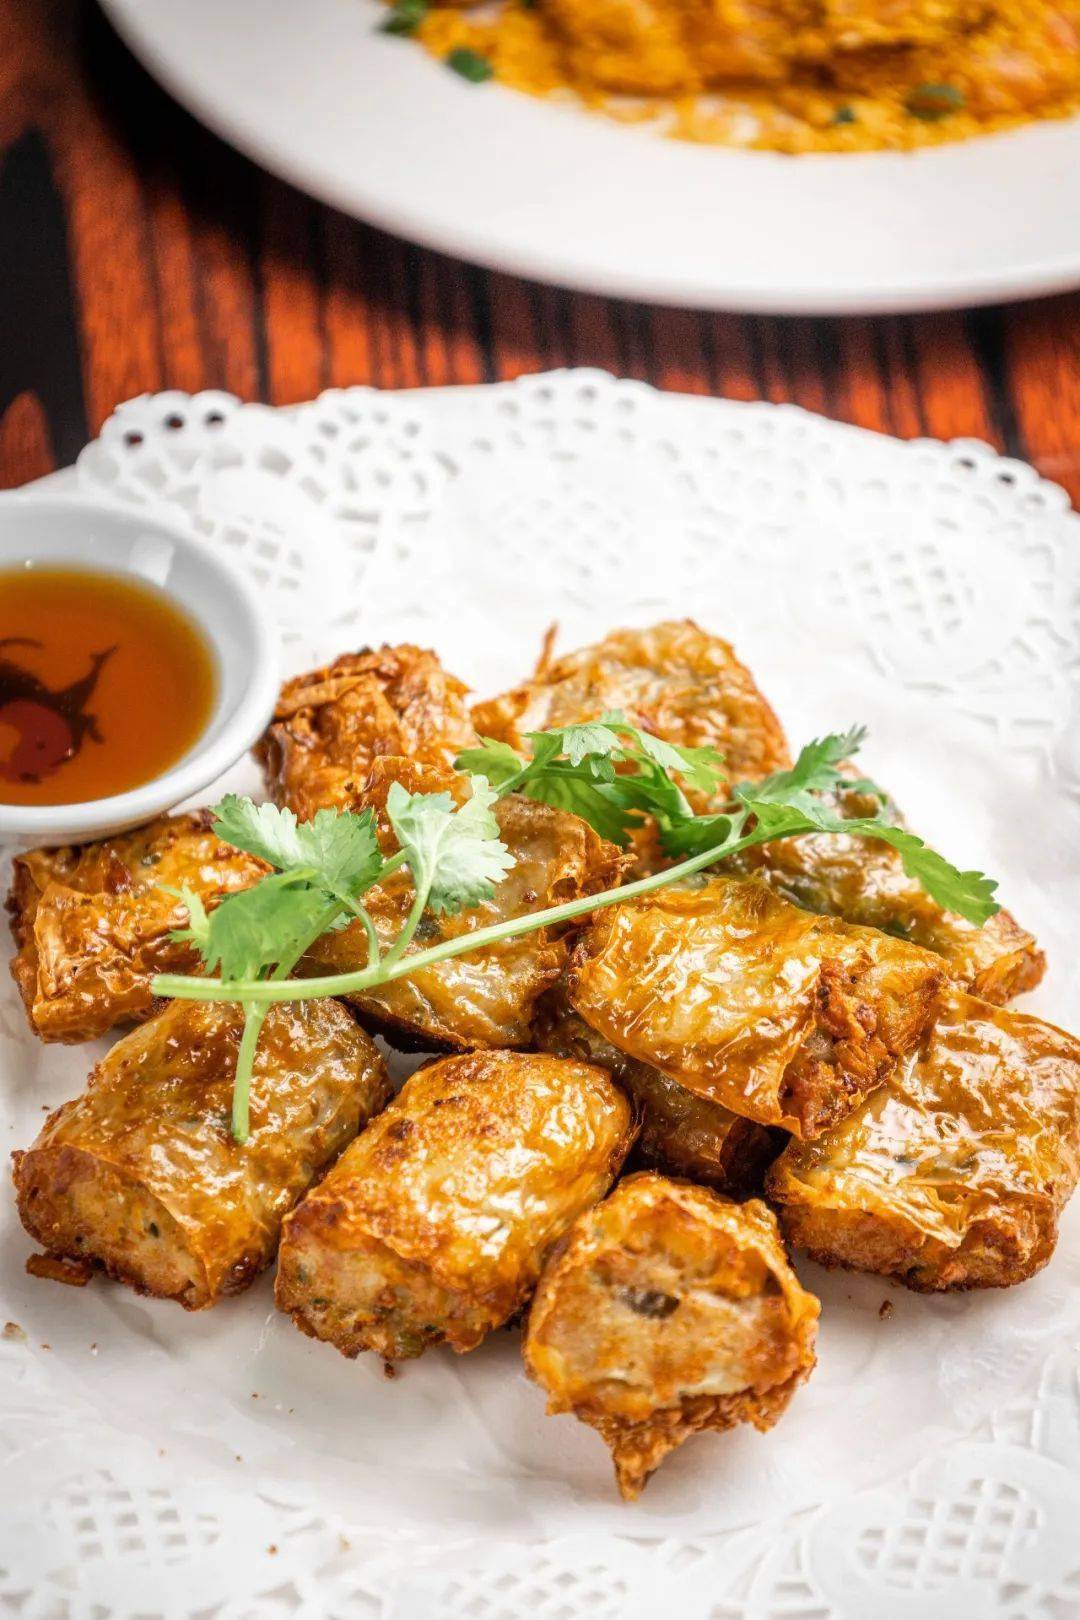 潮汕炸粿肉 ·一盘就可以吃到超多料的卤味拼盘,鸡蛋,猪耳朵,潮汕